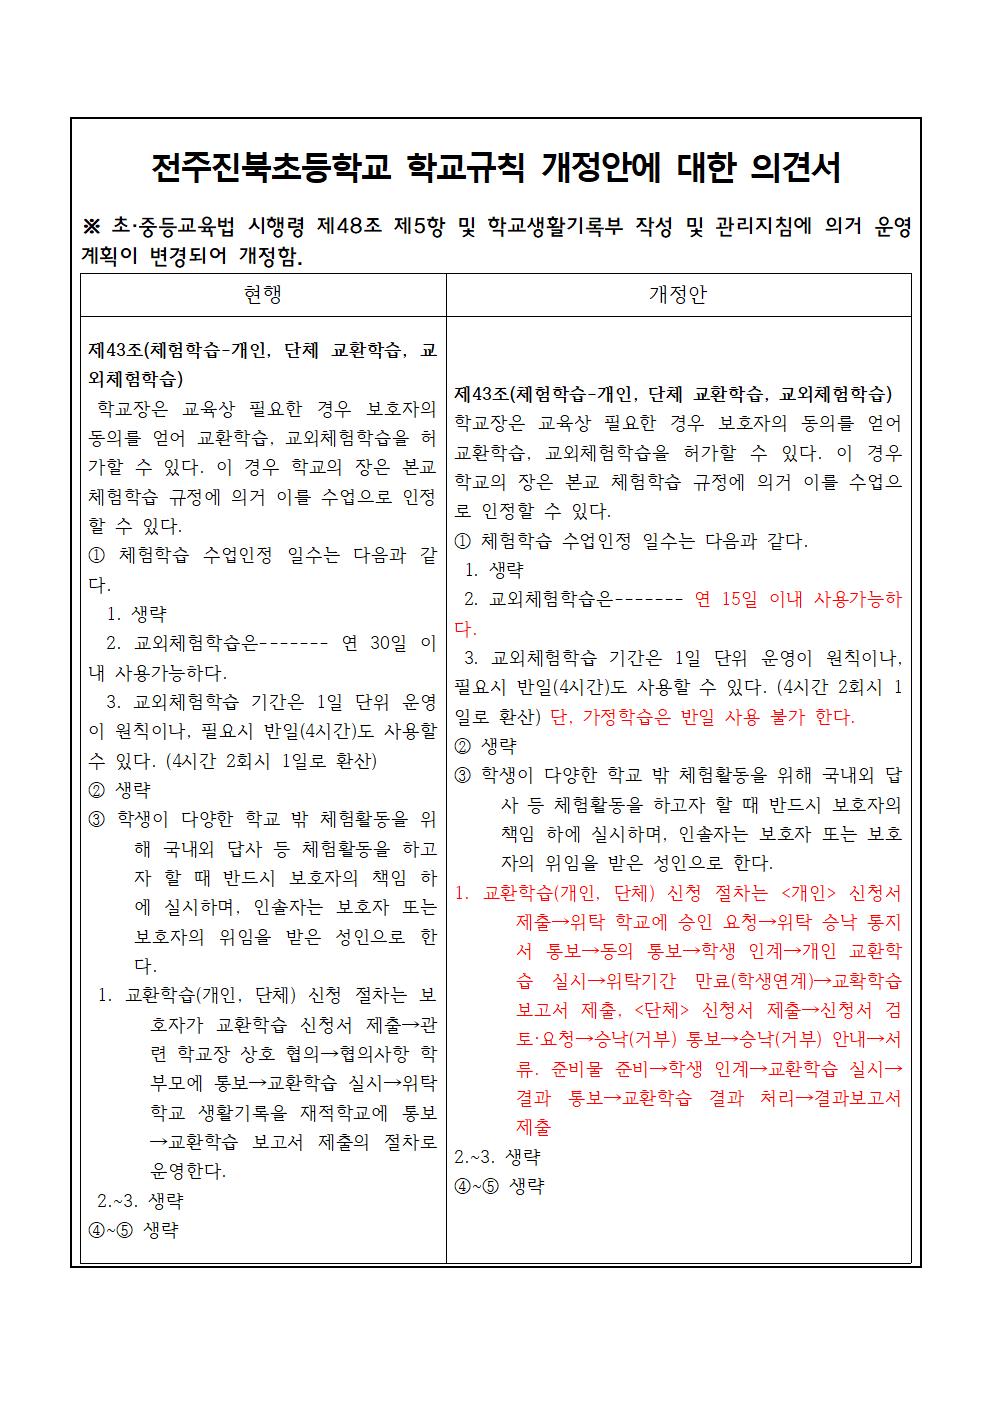 전주진북초 학교규칙 개정 의견 제출 안내장003